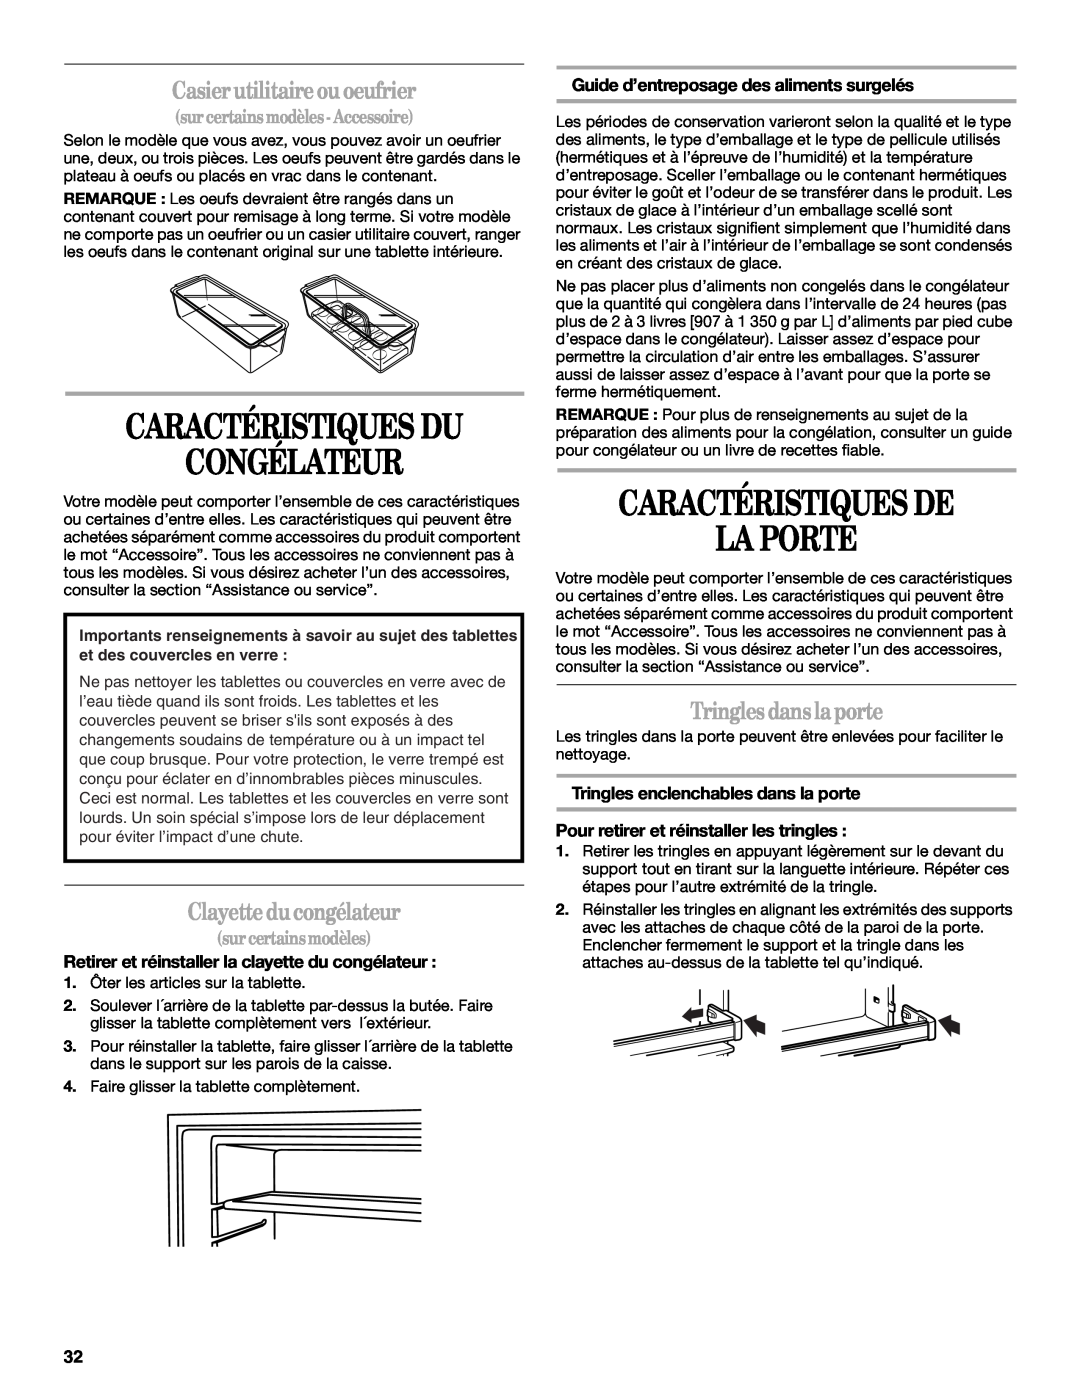 Amana W10154917A manual Congélateur, Caractéristiques De La Porte, Casier utilitaireou oeufrier, Clayette ducongélateur 